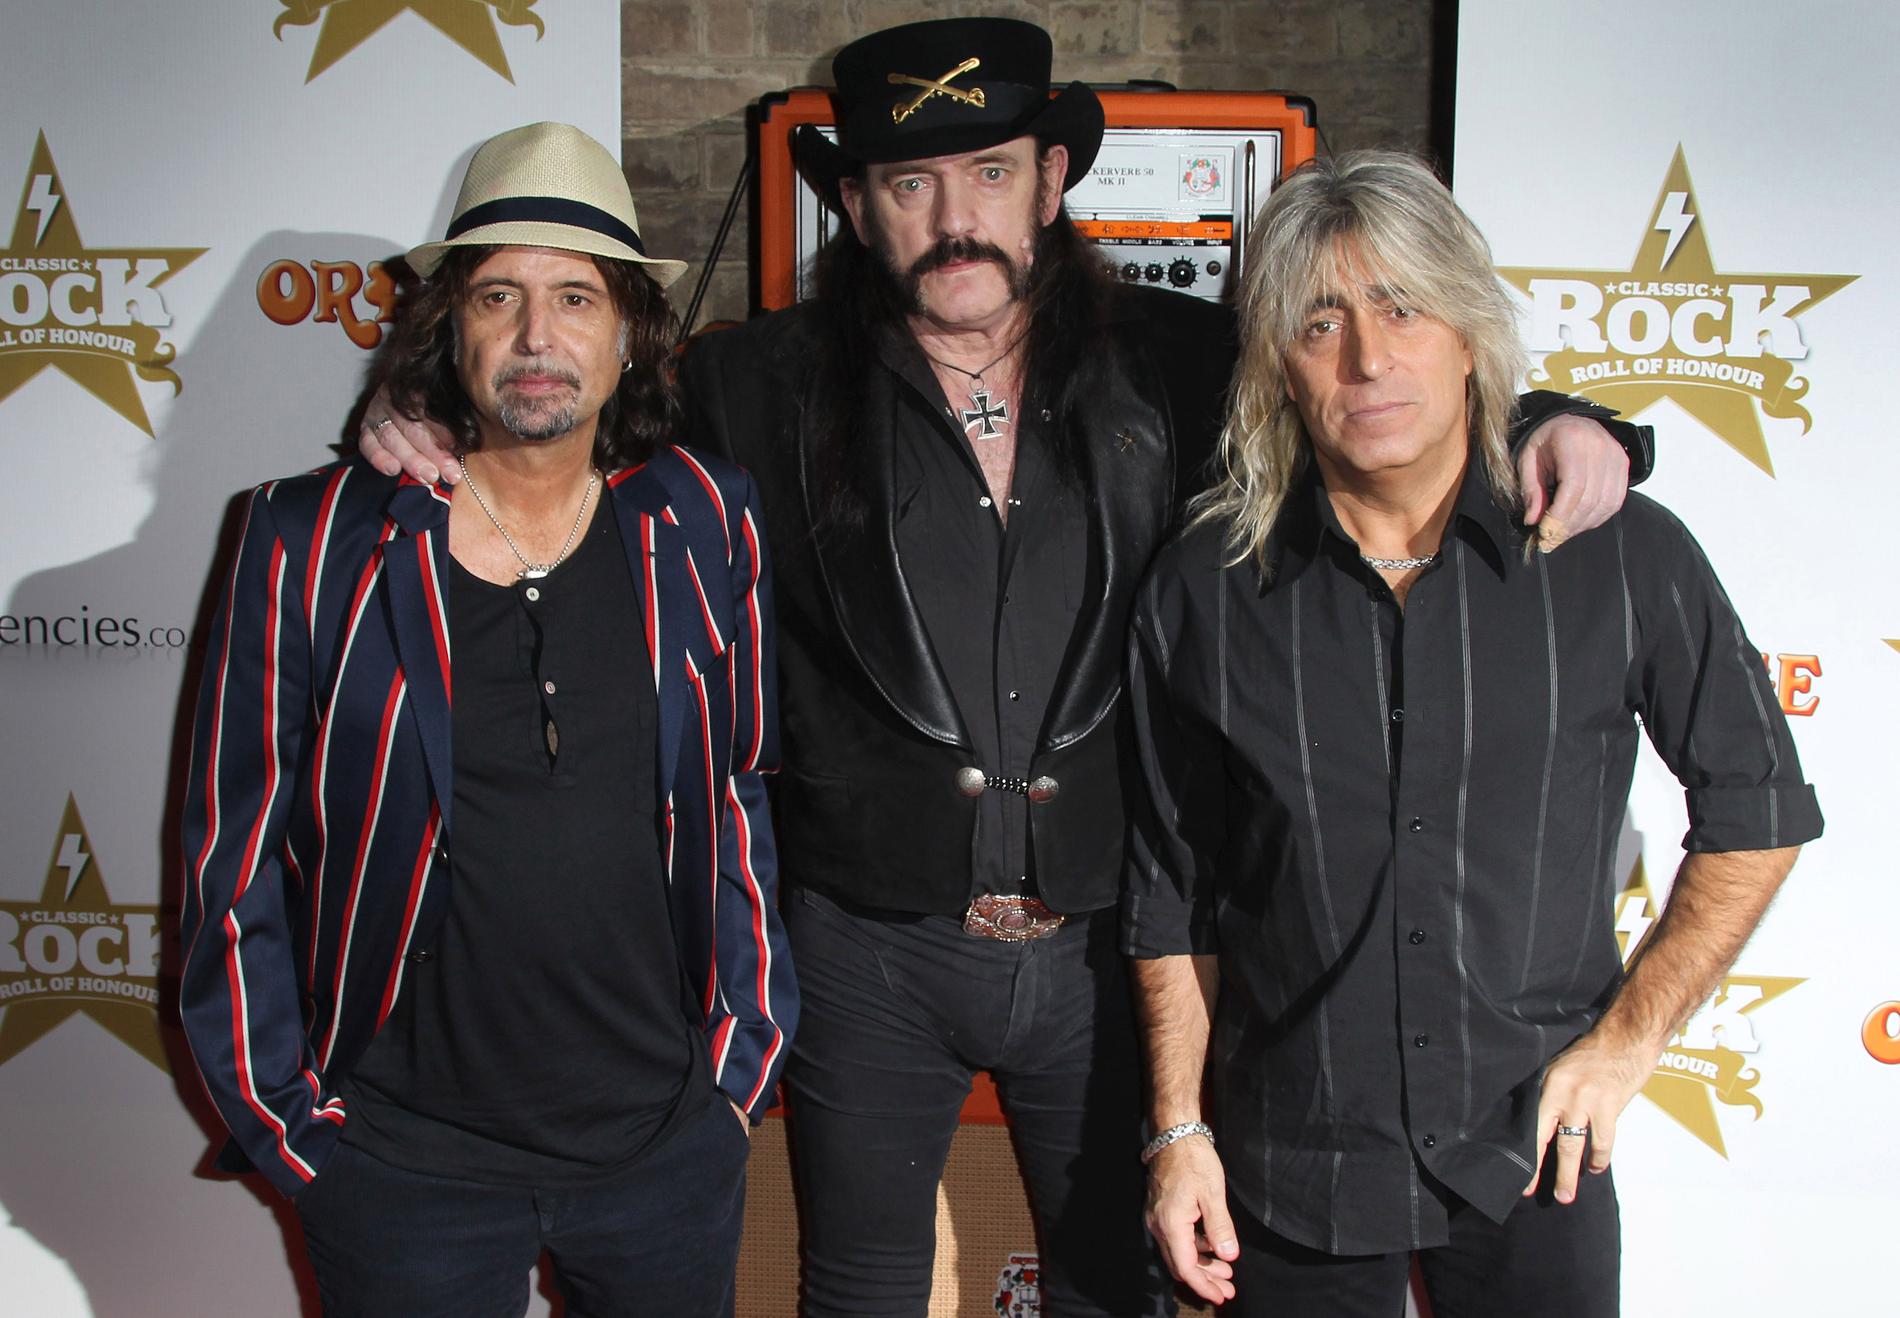 Från vänster Phil Campbell, Lemmy Kilmister och Mikkey Dee från Motörhead vid Classic Rock Roll Of Honour Awards i London 2012.